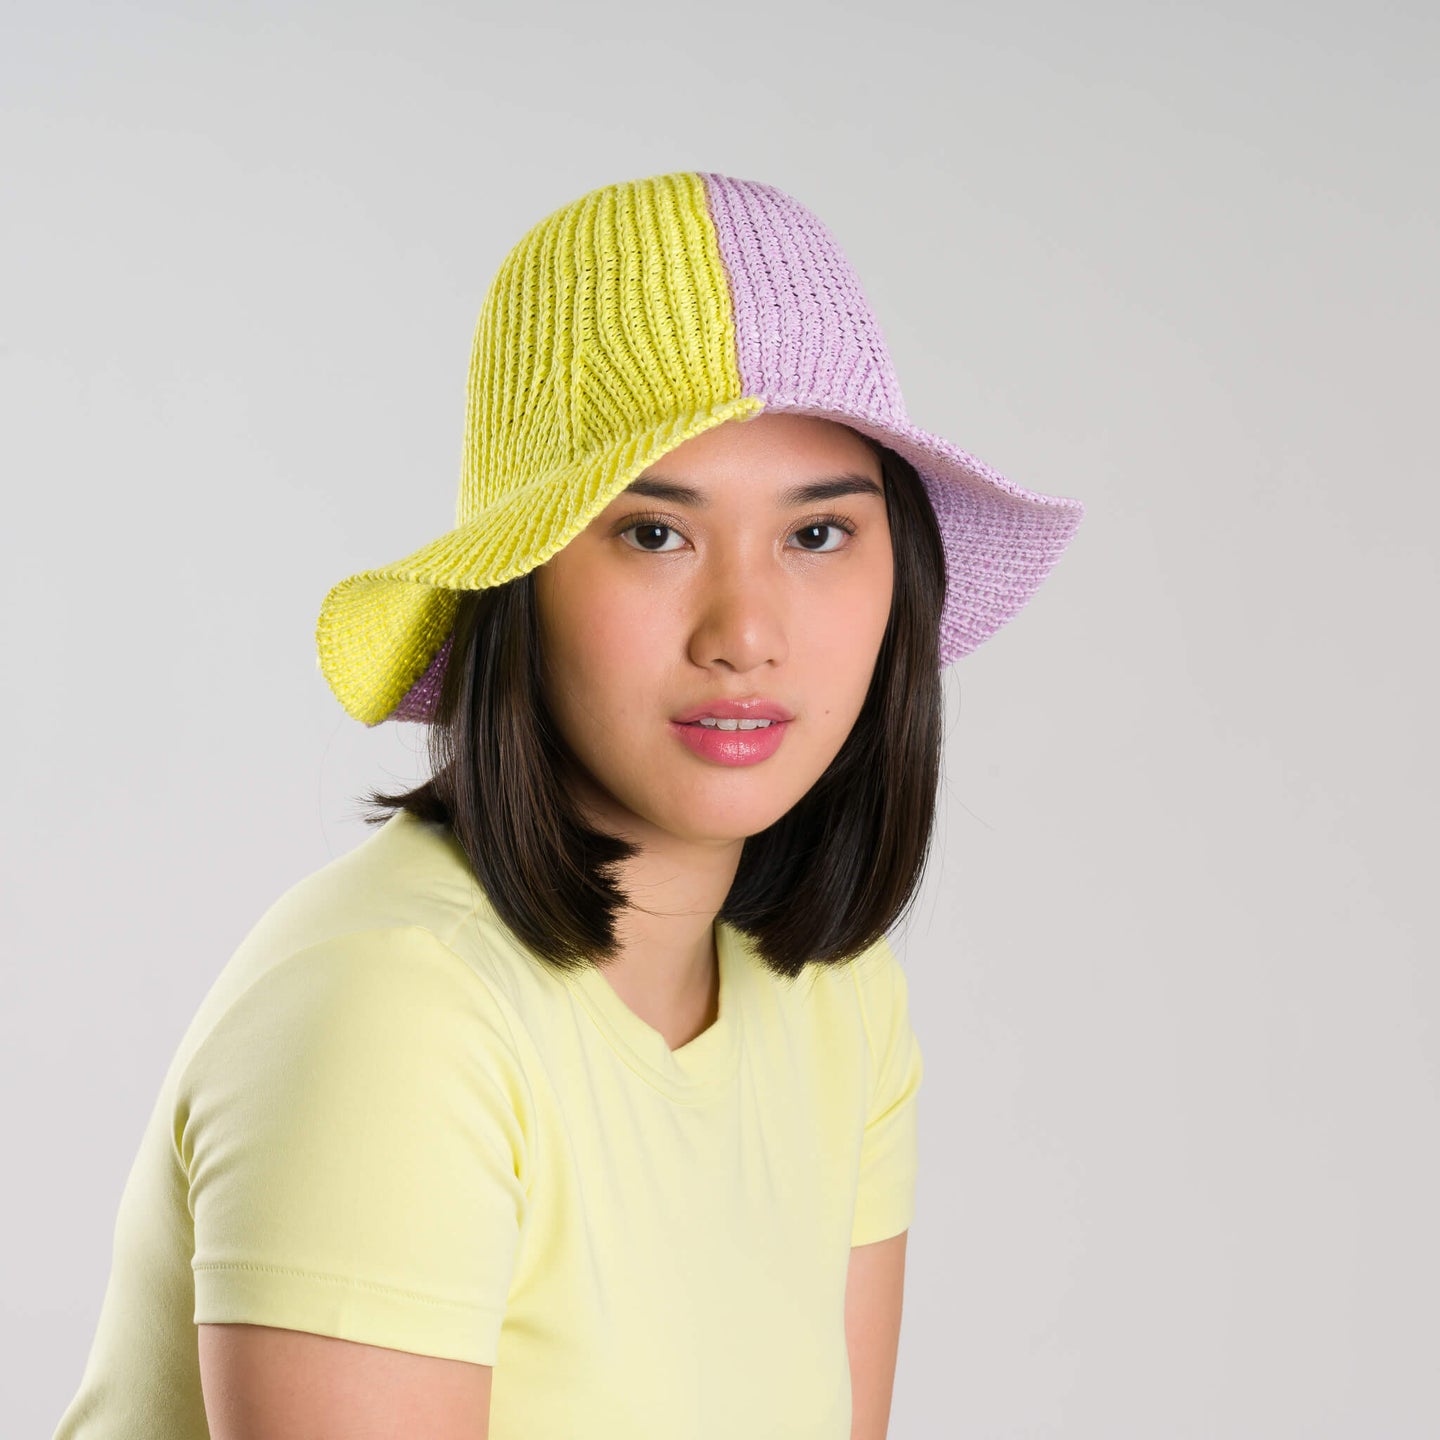 Colorblock Raffia Sun Hat 